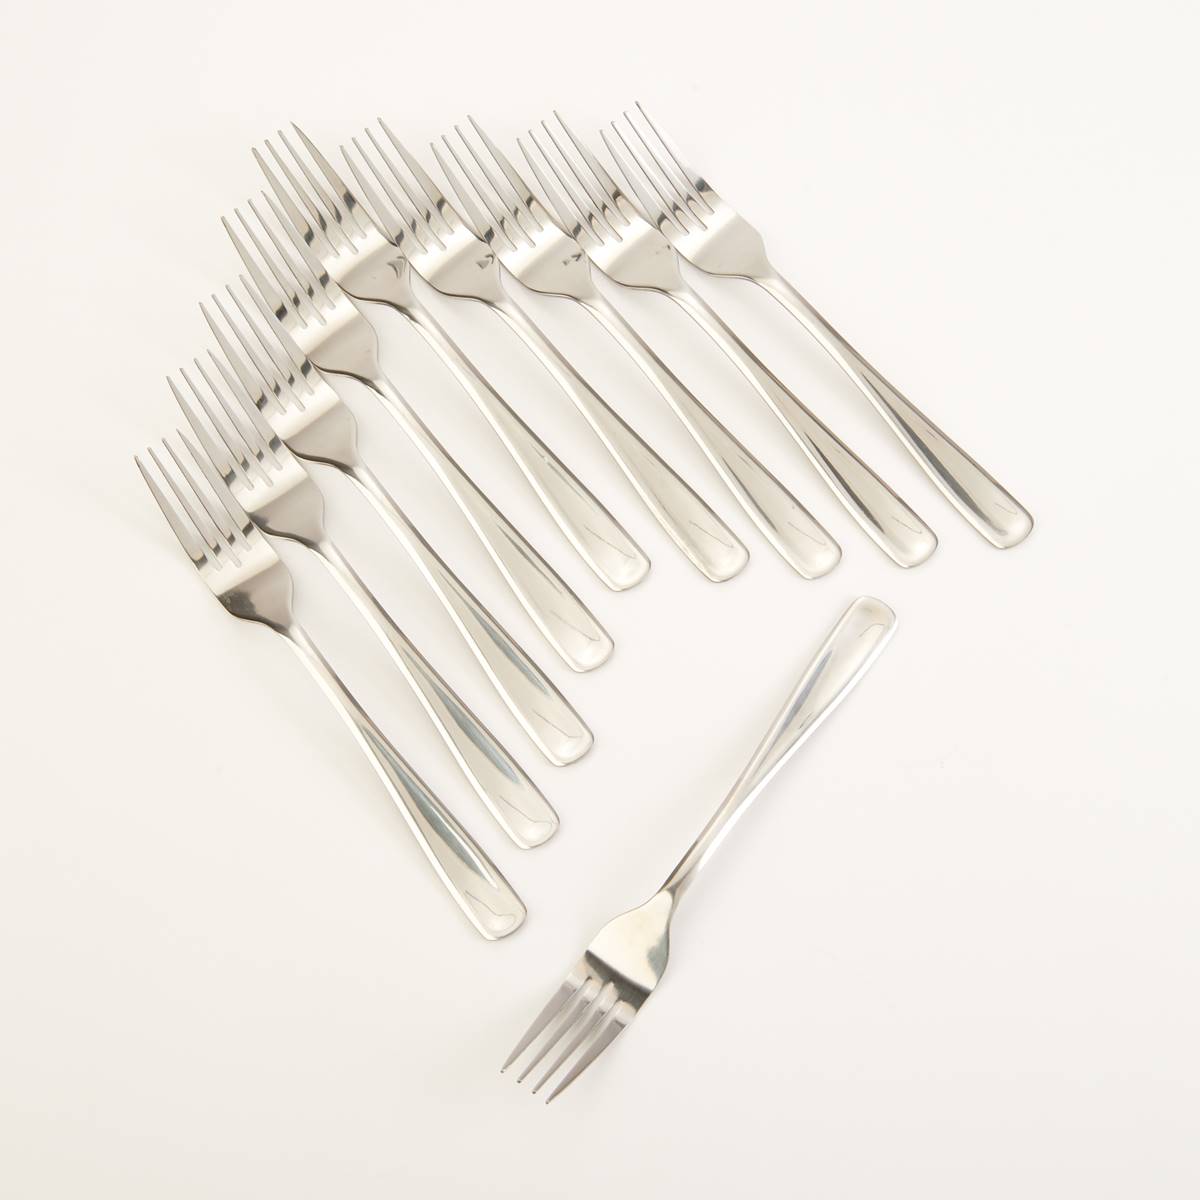 Farberware(R) 10pc. Centurion Dinner Forks